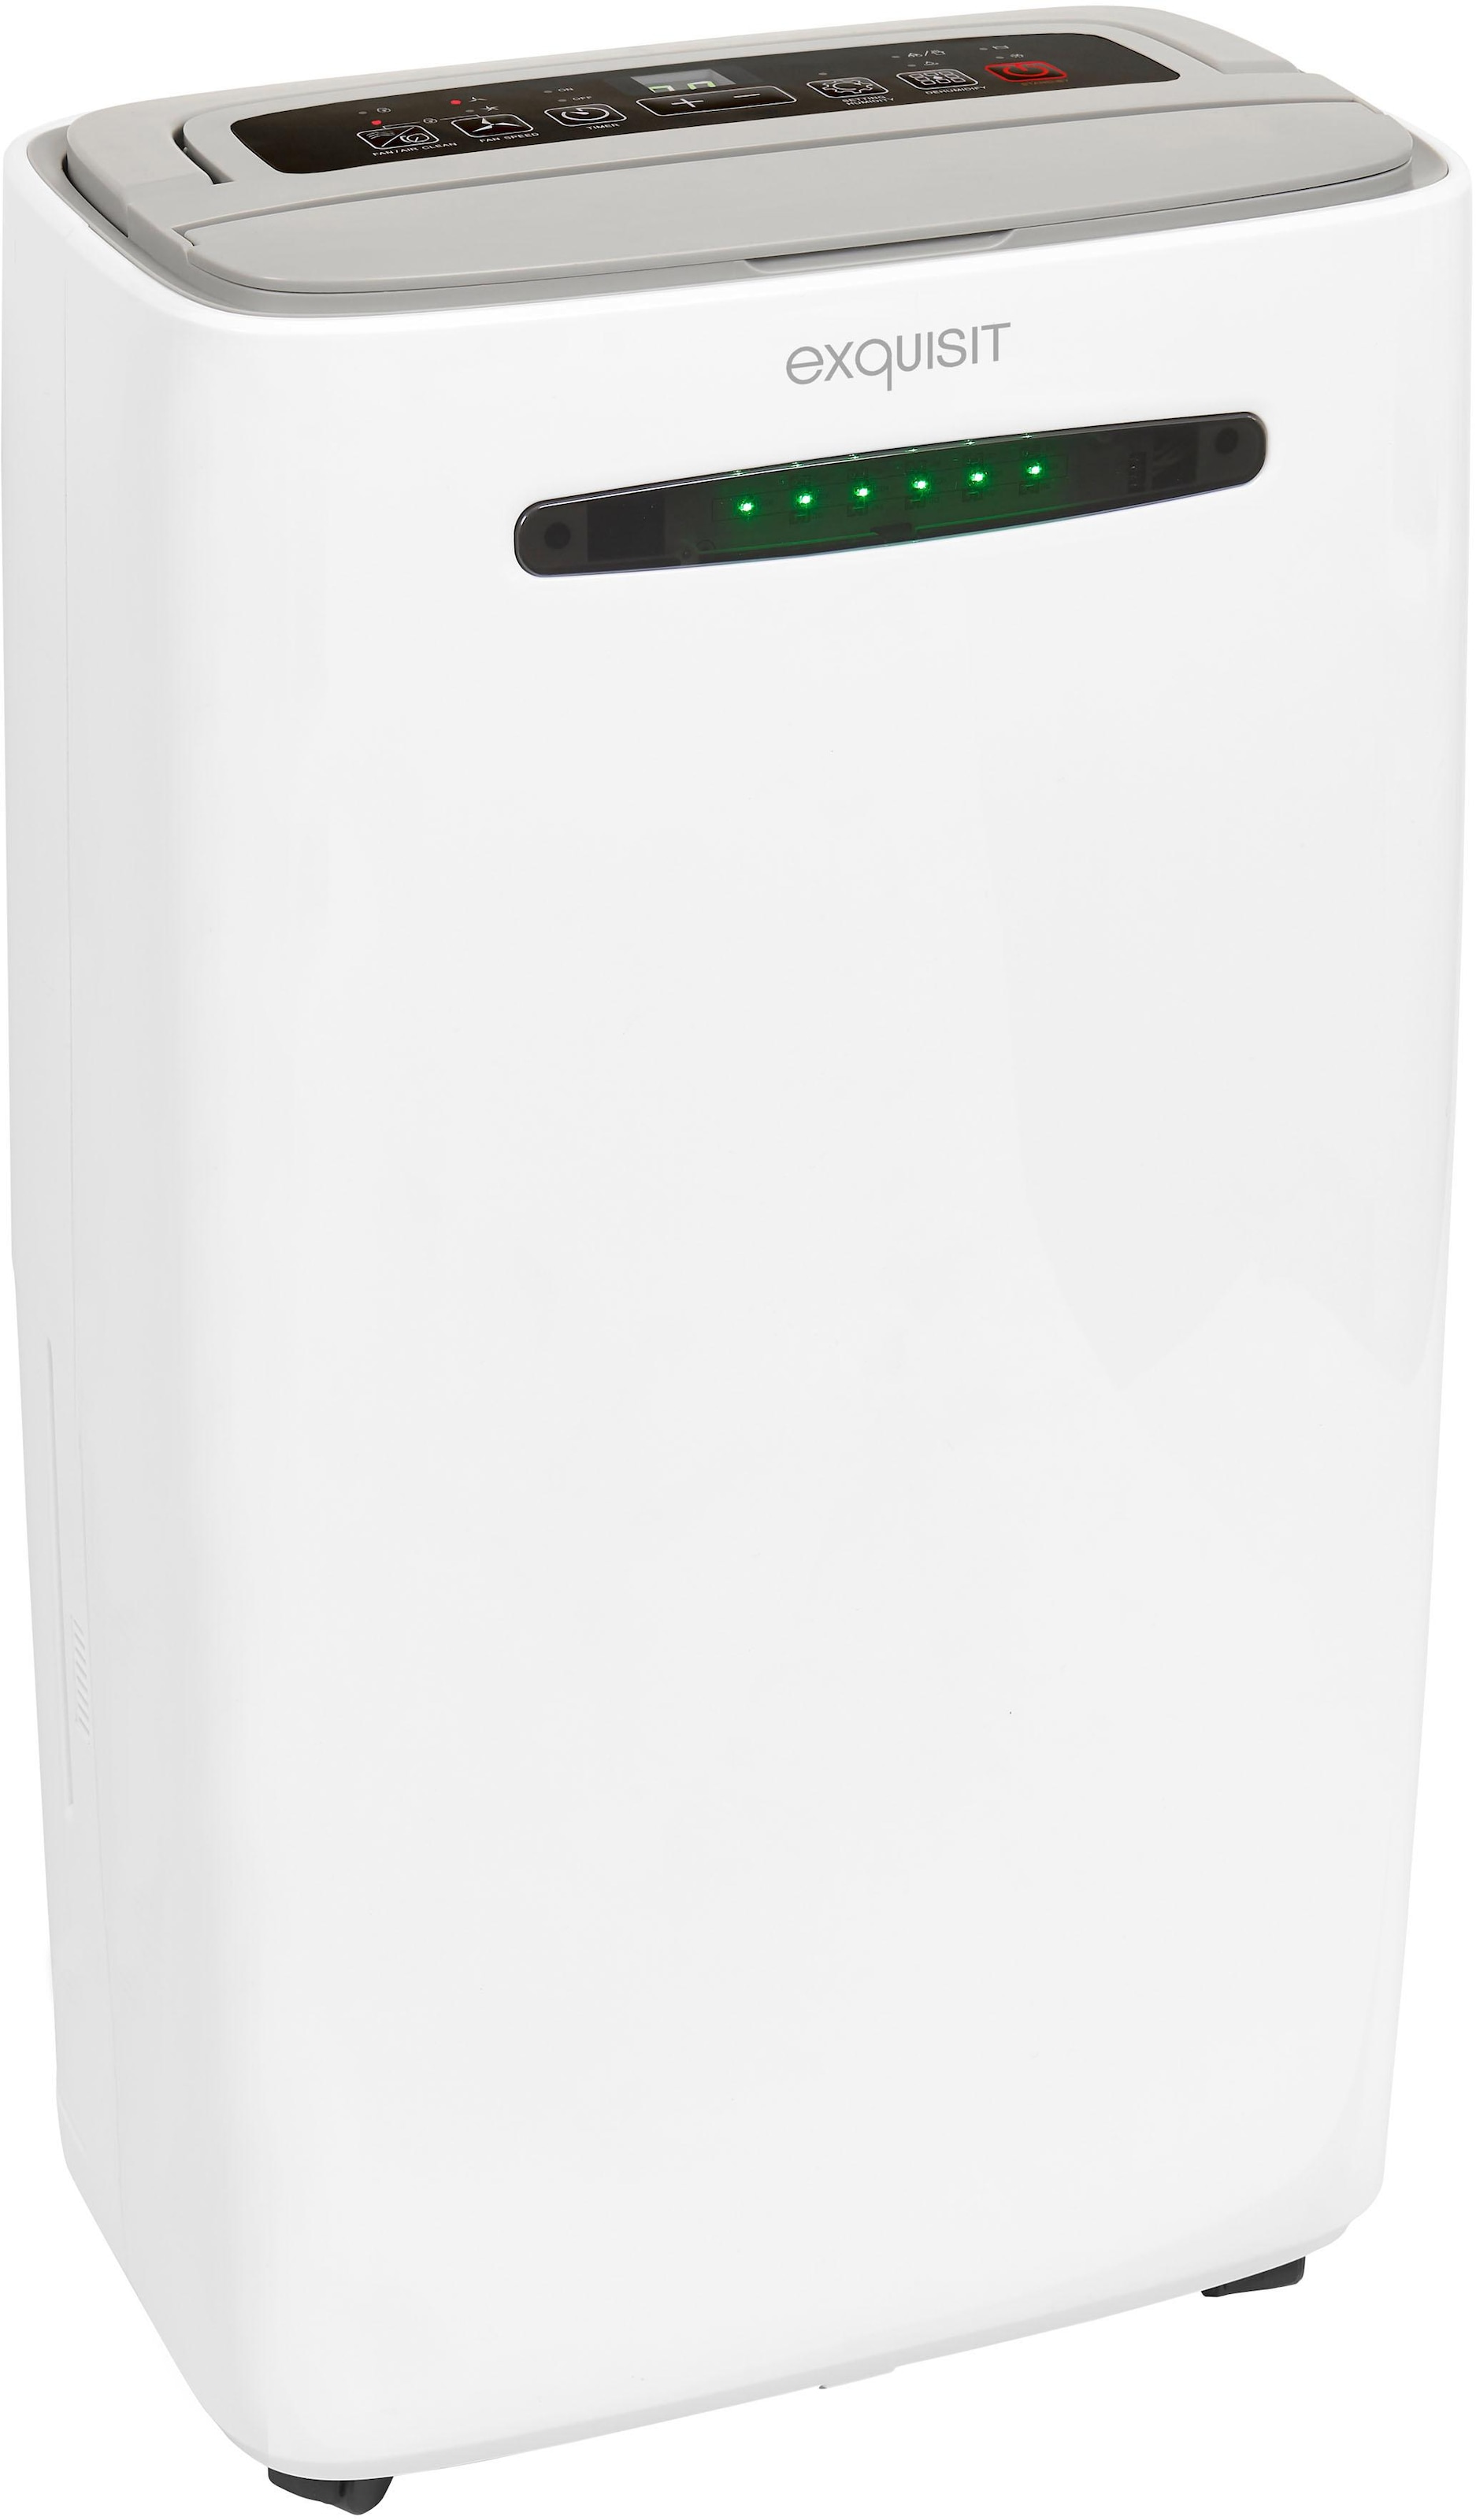 Wenko Raumentfeuchter Luftentfeuchter 2 x 1 kg 5410022100, Raumentfeuchter, Nützliches für Zuhause, Wohnen & Haushalt